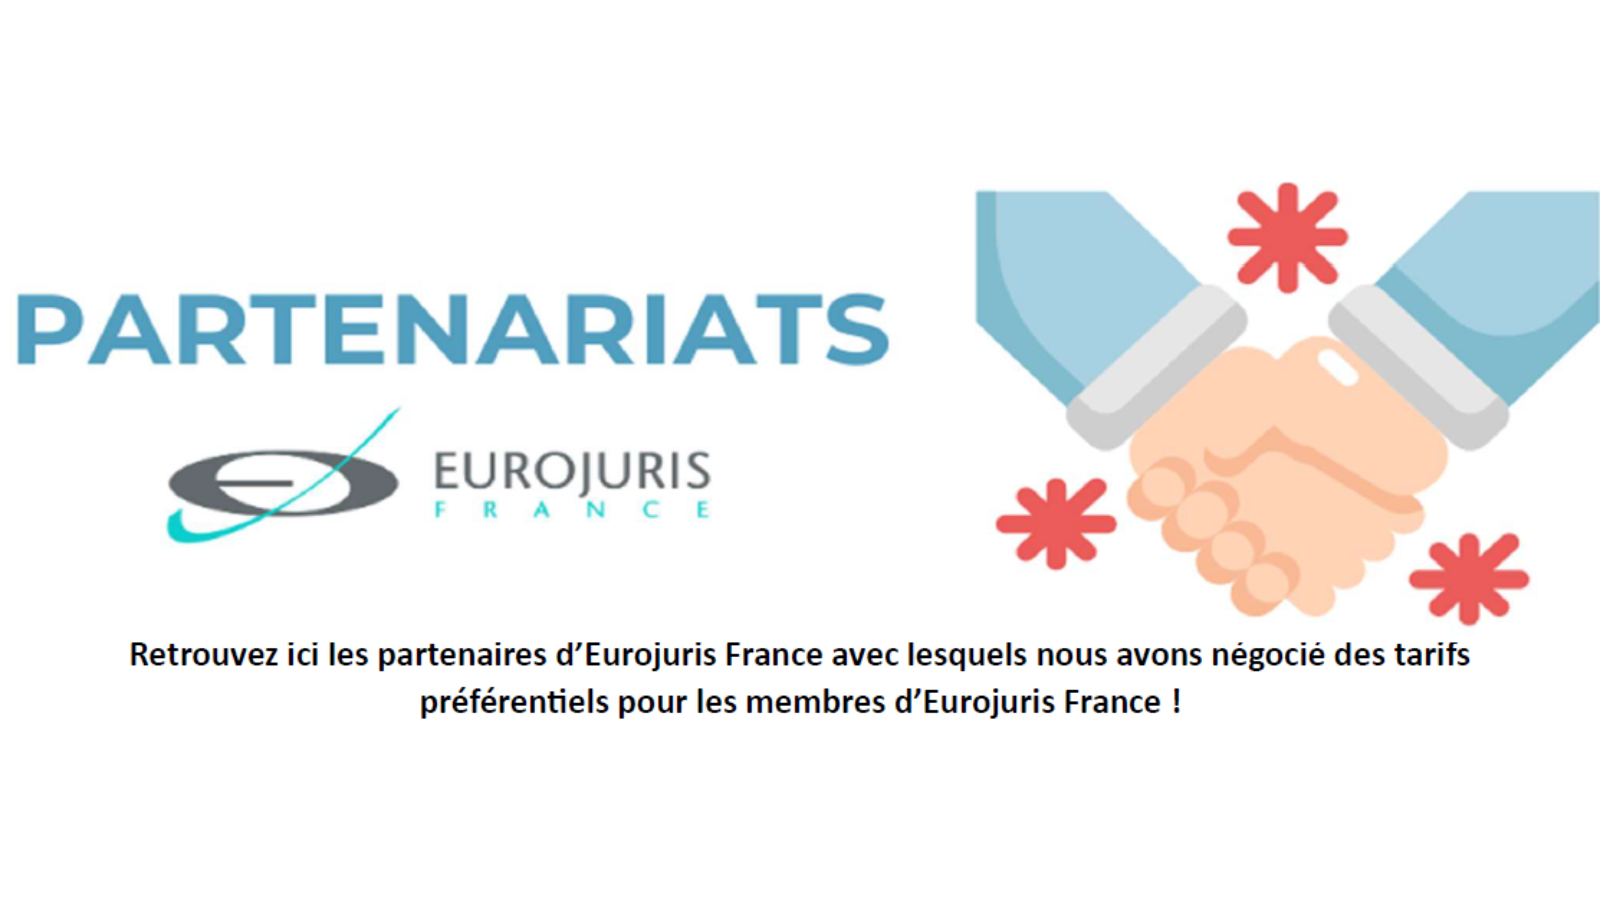 Les partenaires d'Eurojuris France